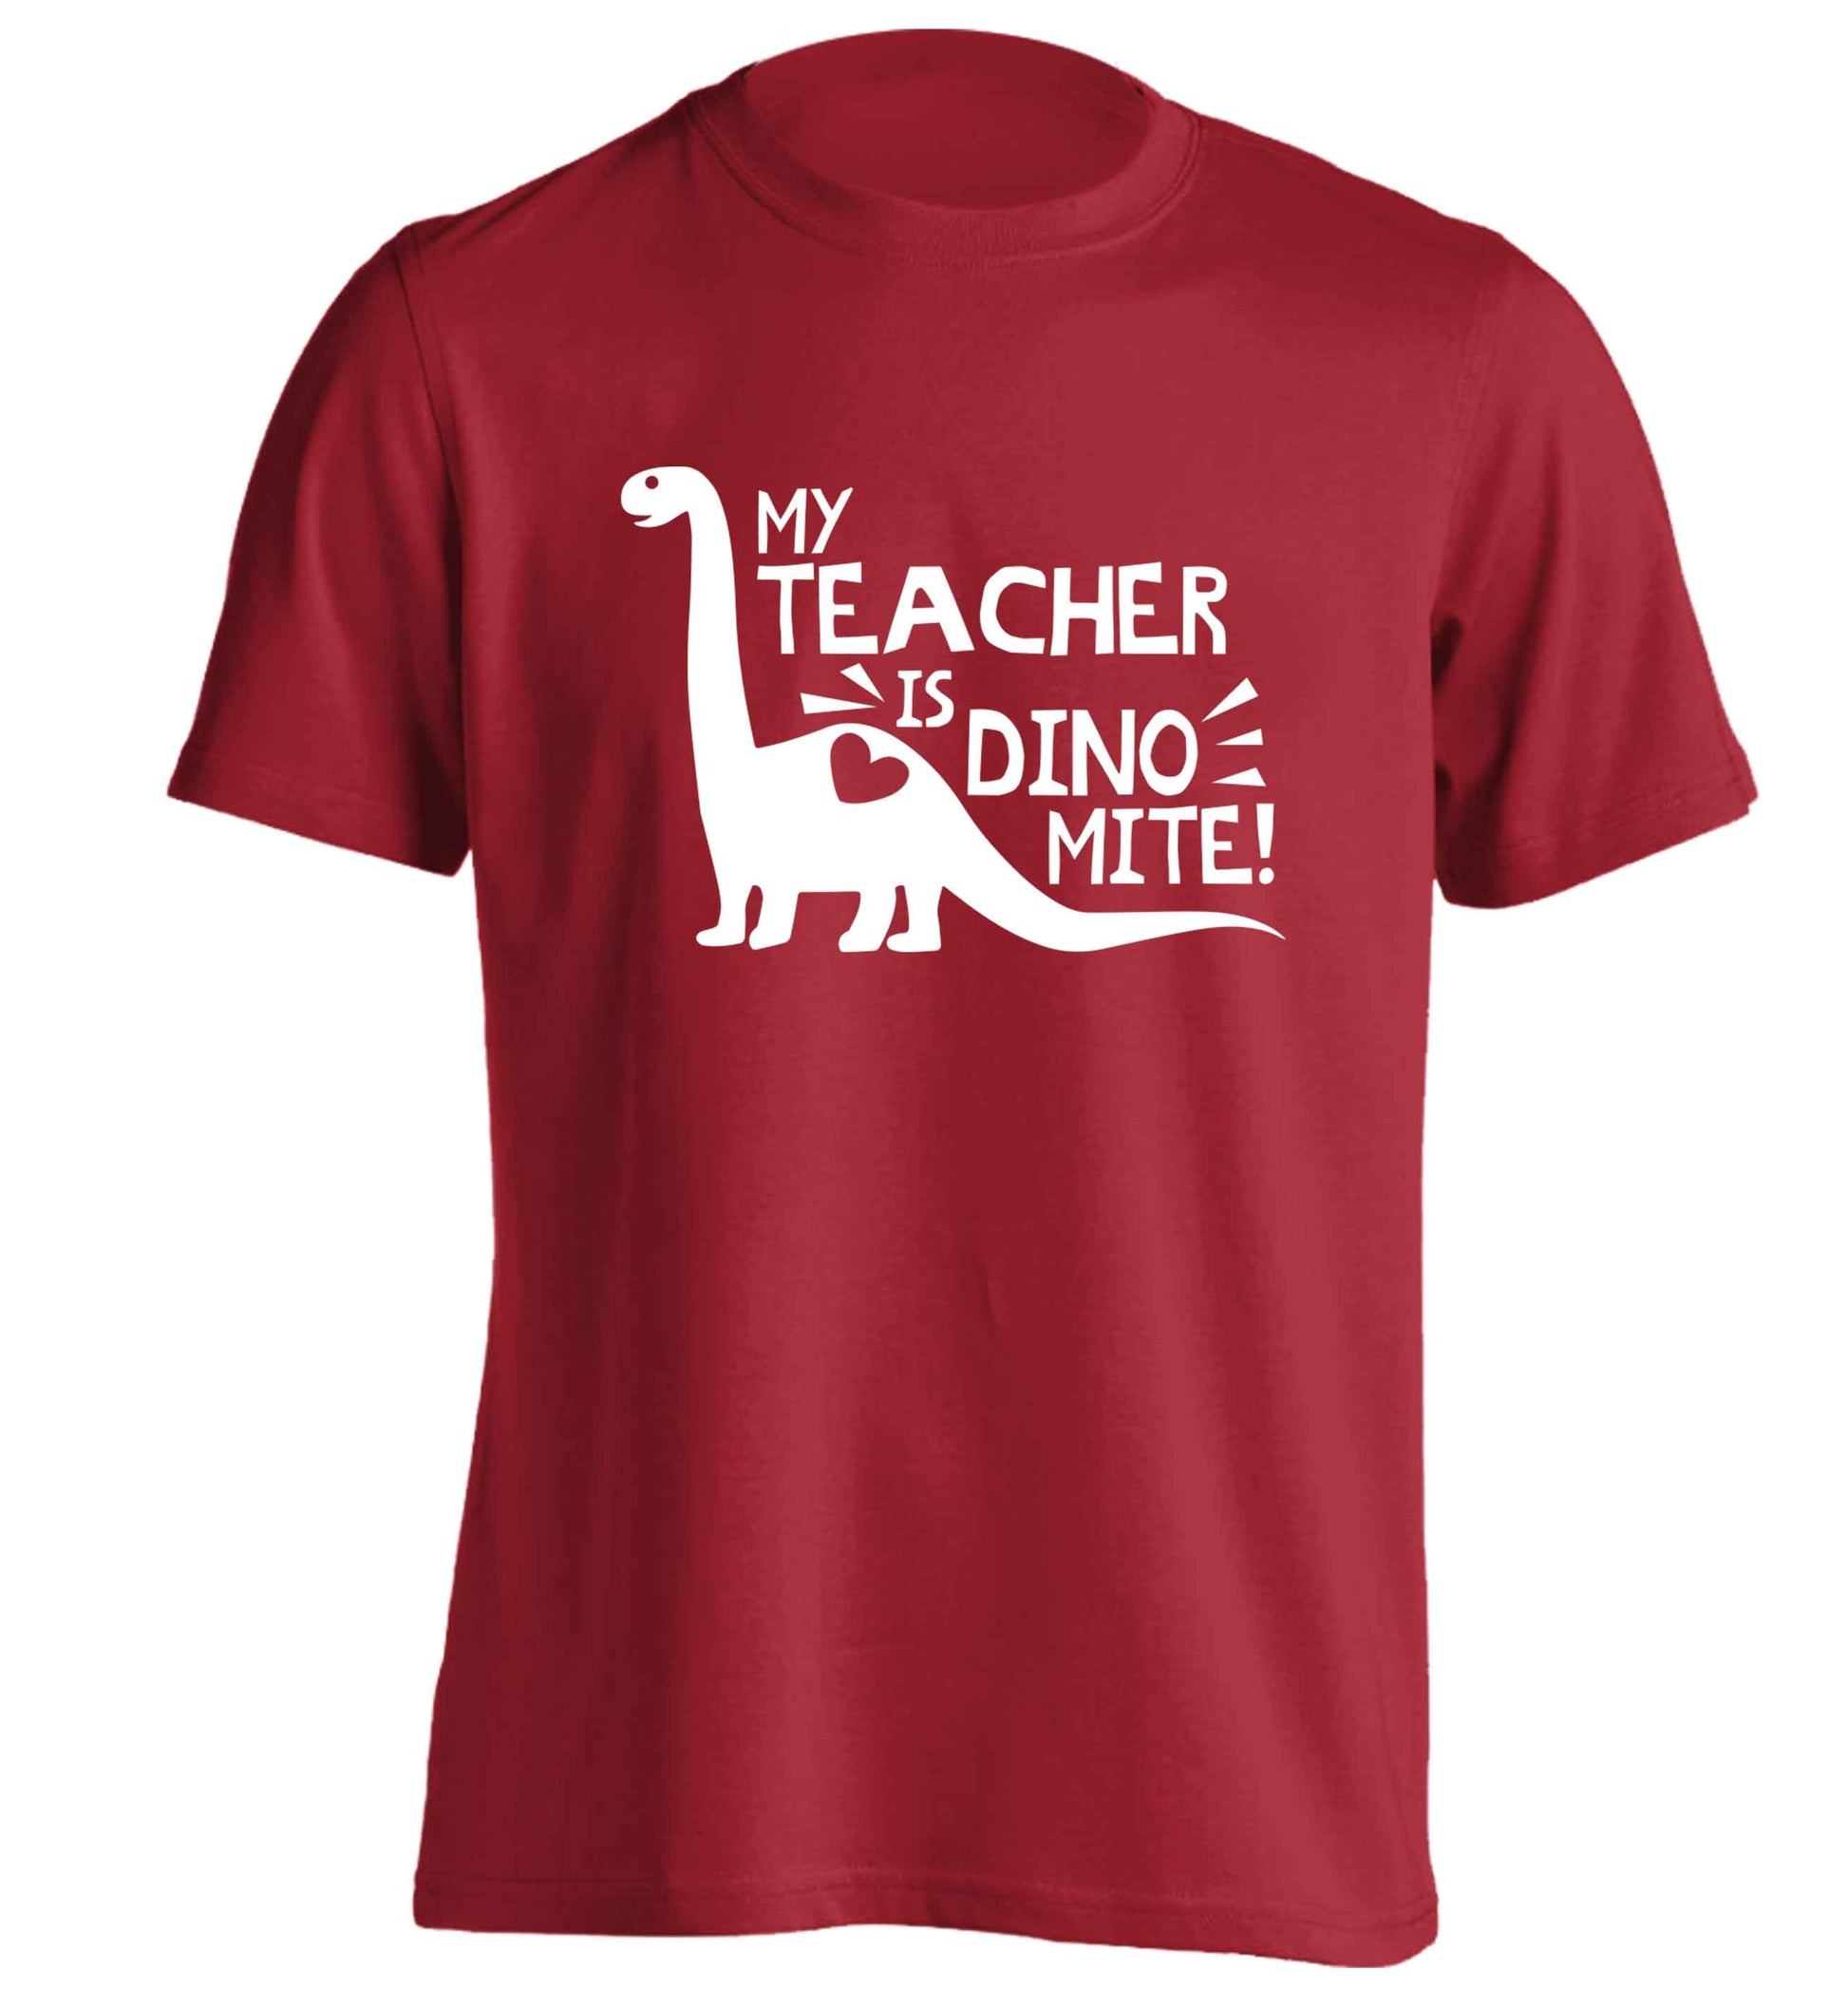 My teacher is dinomite! adults unisex red Tshirt 2XL